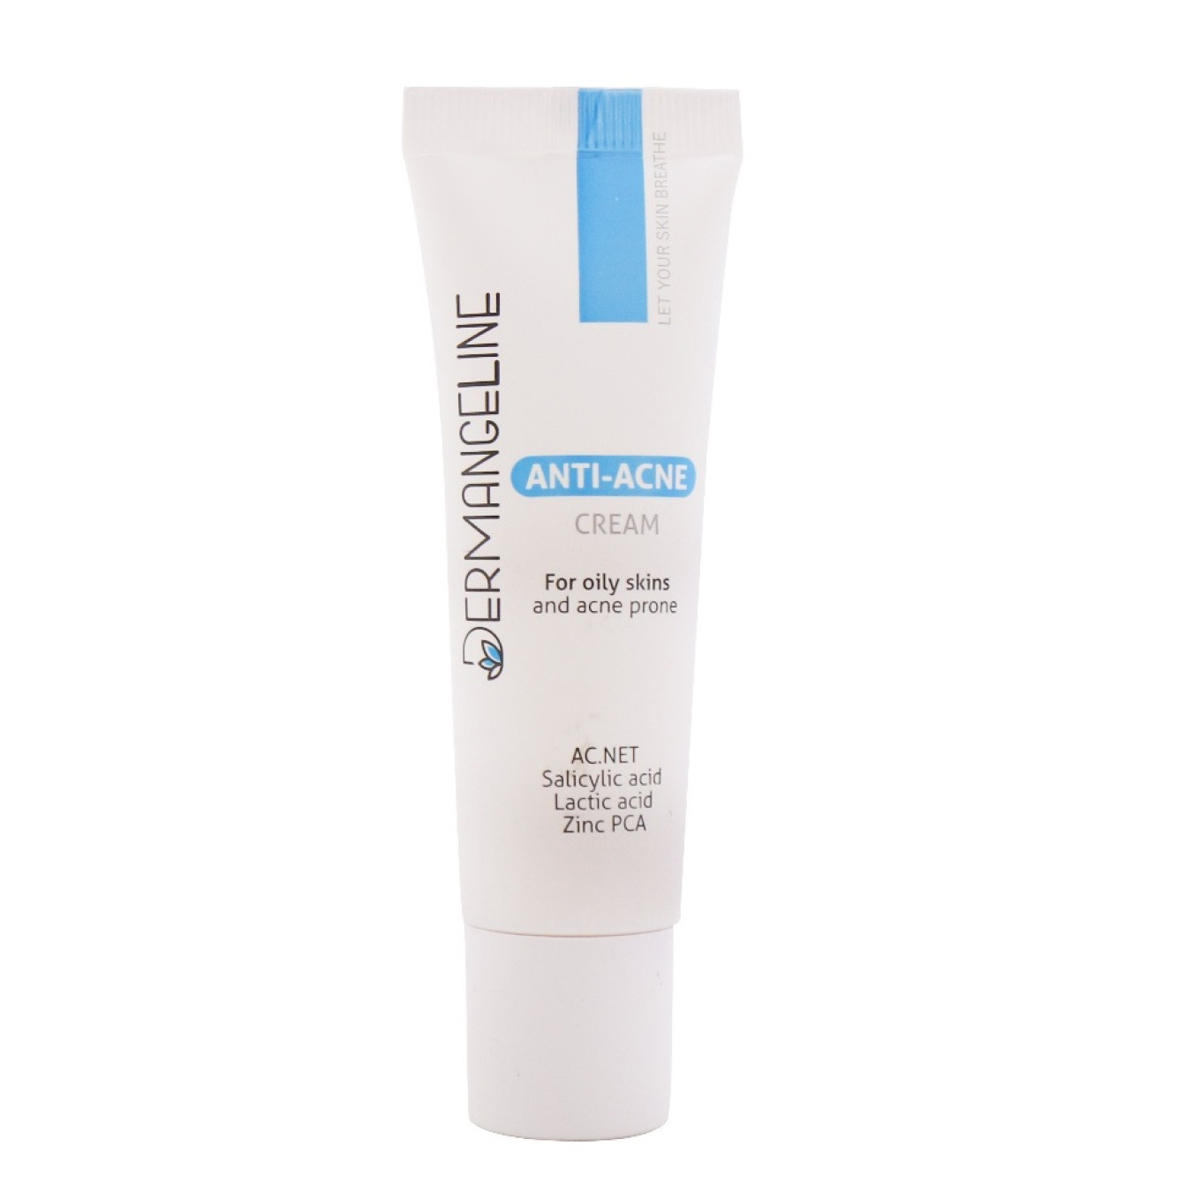 کرم مناسب پوست های دارای جوش حاوی 0.5% سالیسیلیک اسید و 2.25% لاکتیک اسید ~Anti-Acne Cream For Acne Prone And Oily Skins~DERMANGELINE